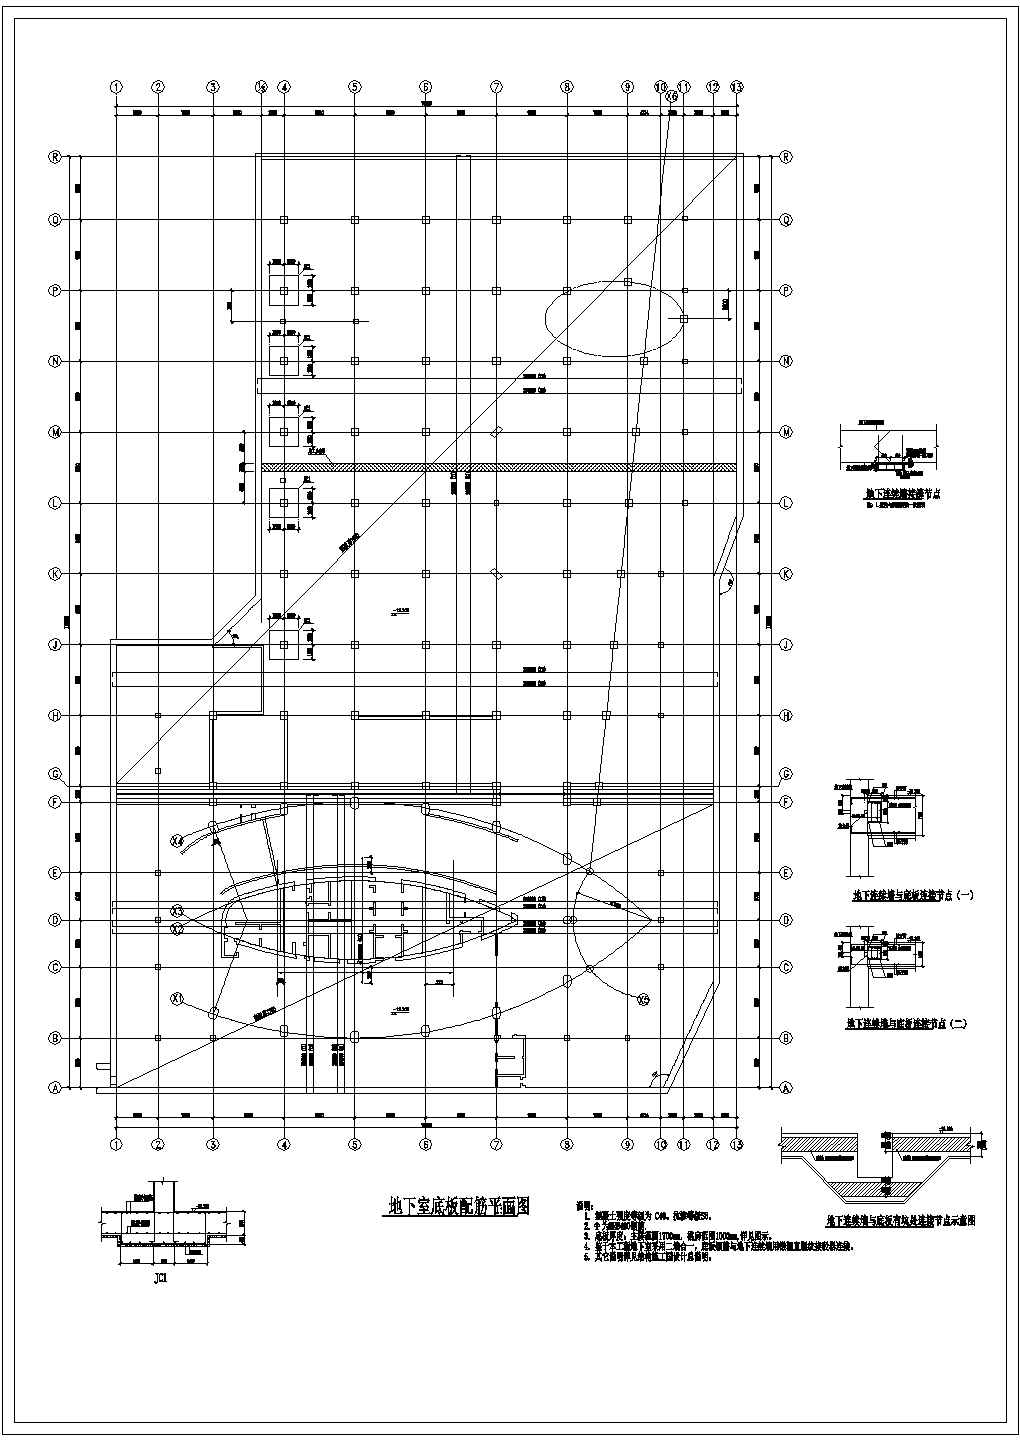 二十三层框架核心筒结构办公商业楼结构施工图